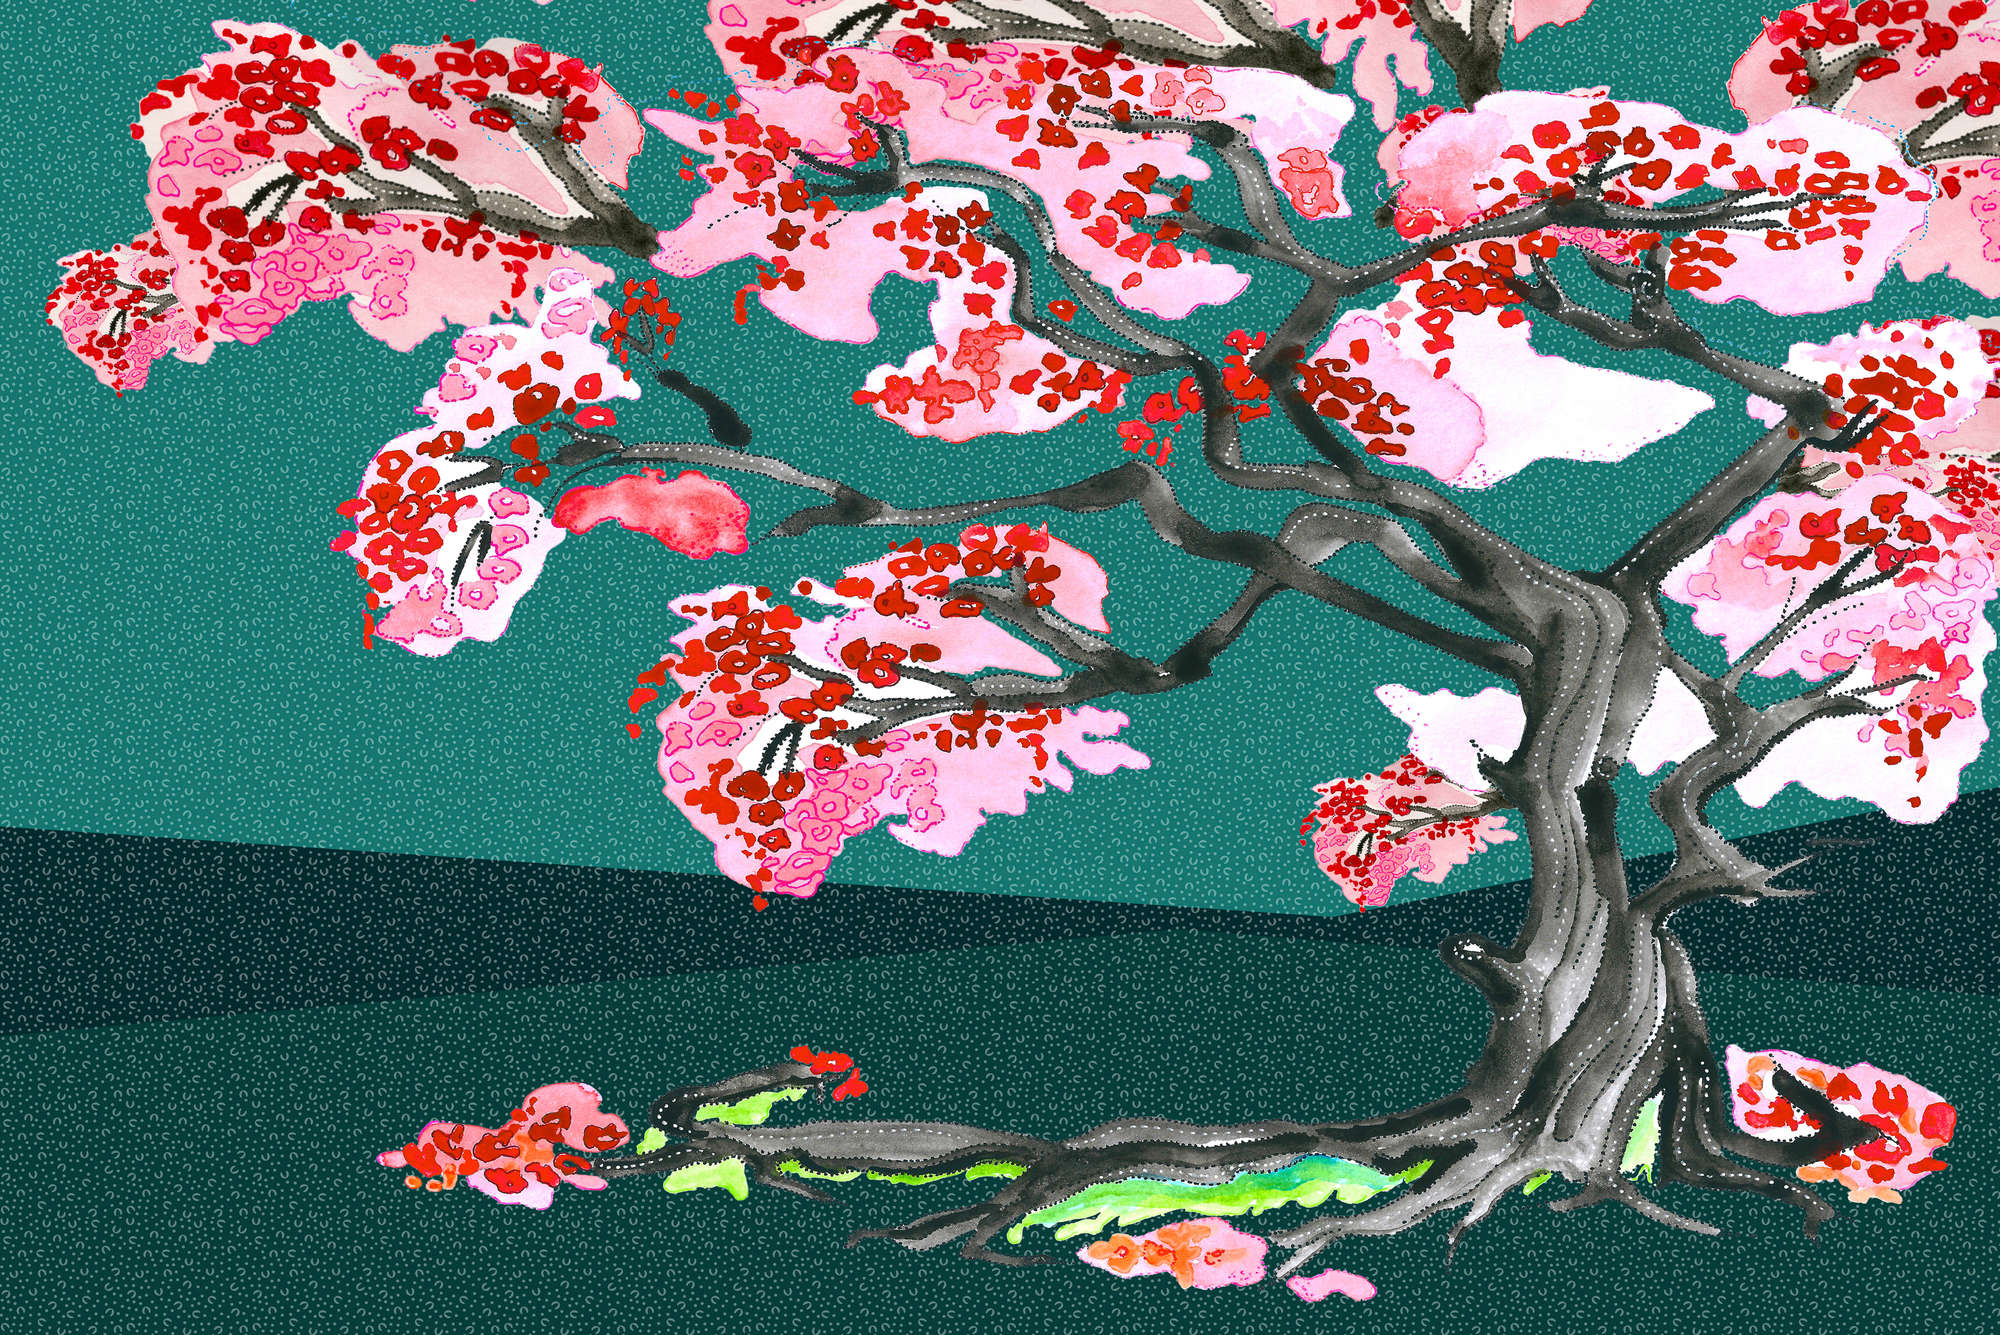             Papier peint fleurs de cerisiers style comics asiatique sur intissé lisse mat
        